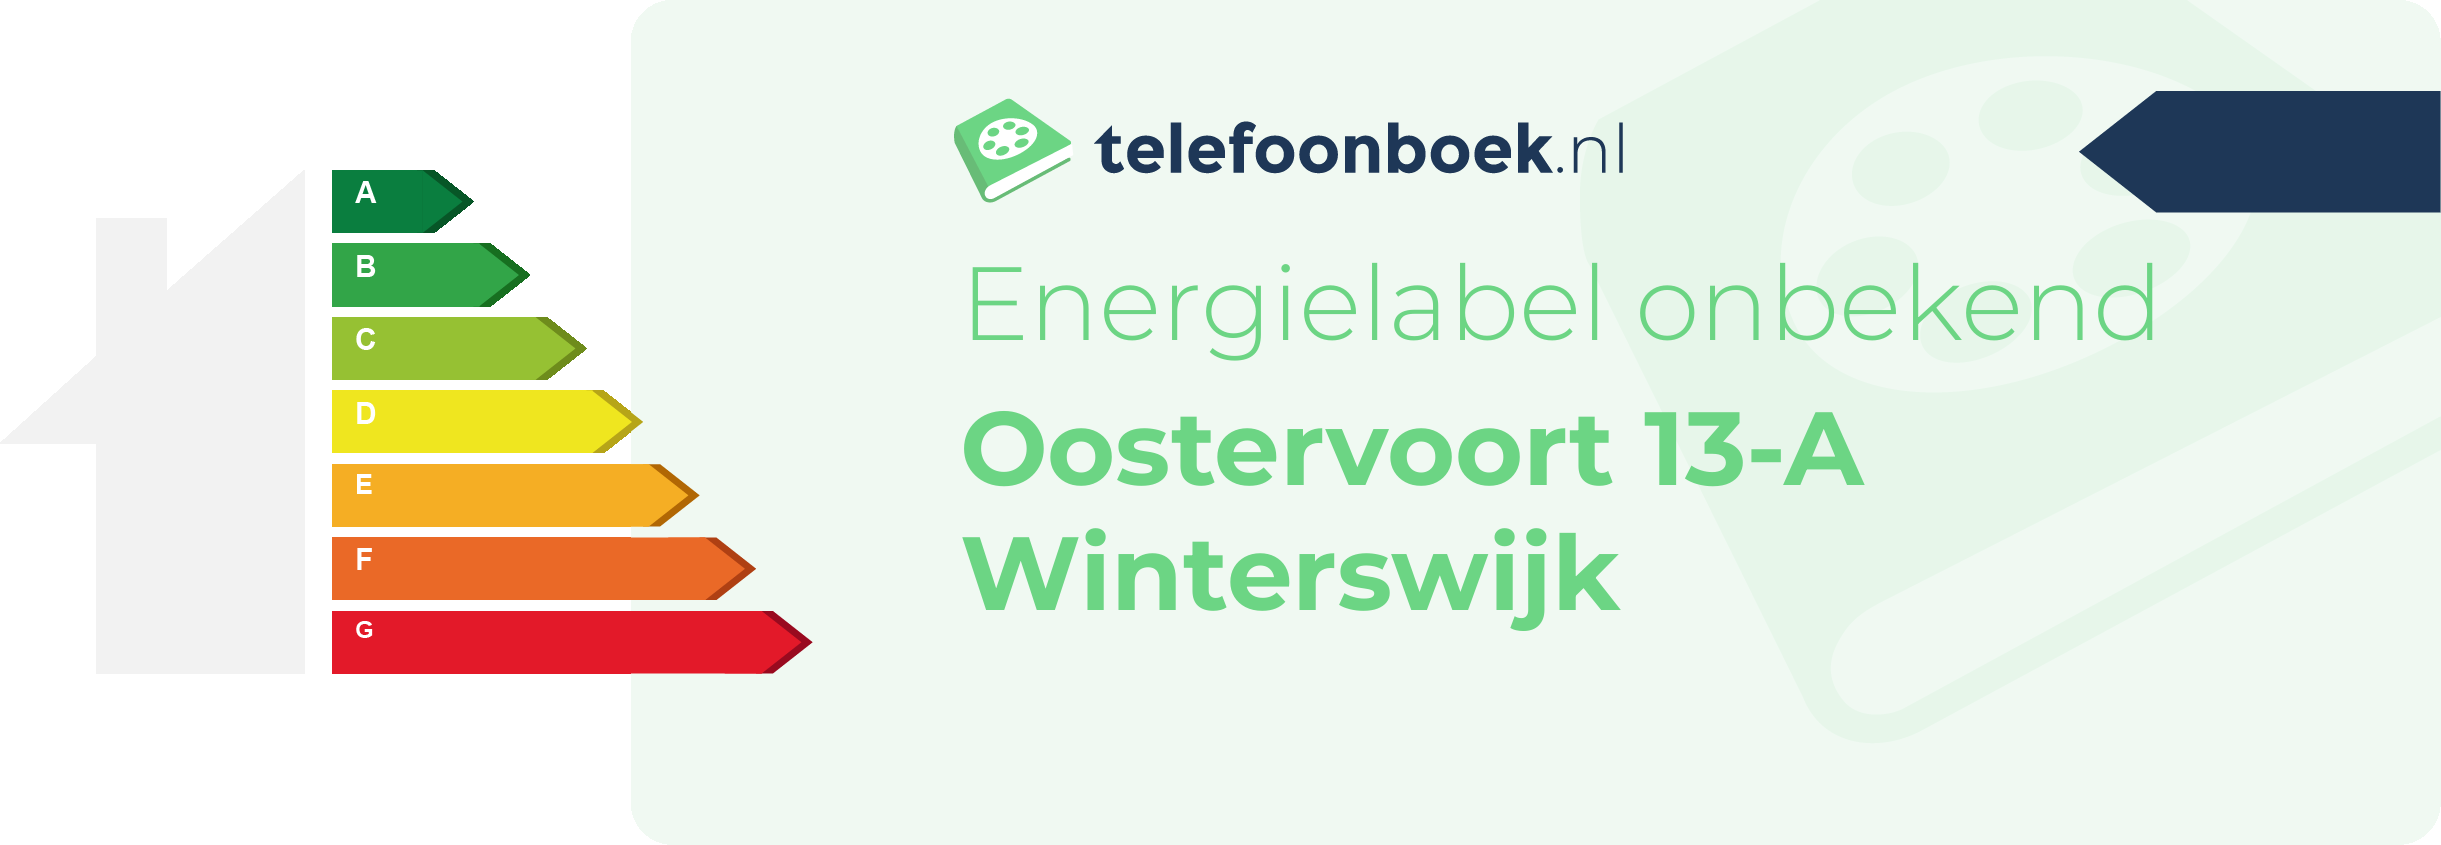 Energielabel Oostervoort 13-A Winterswijk